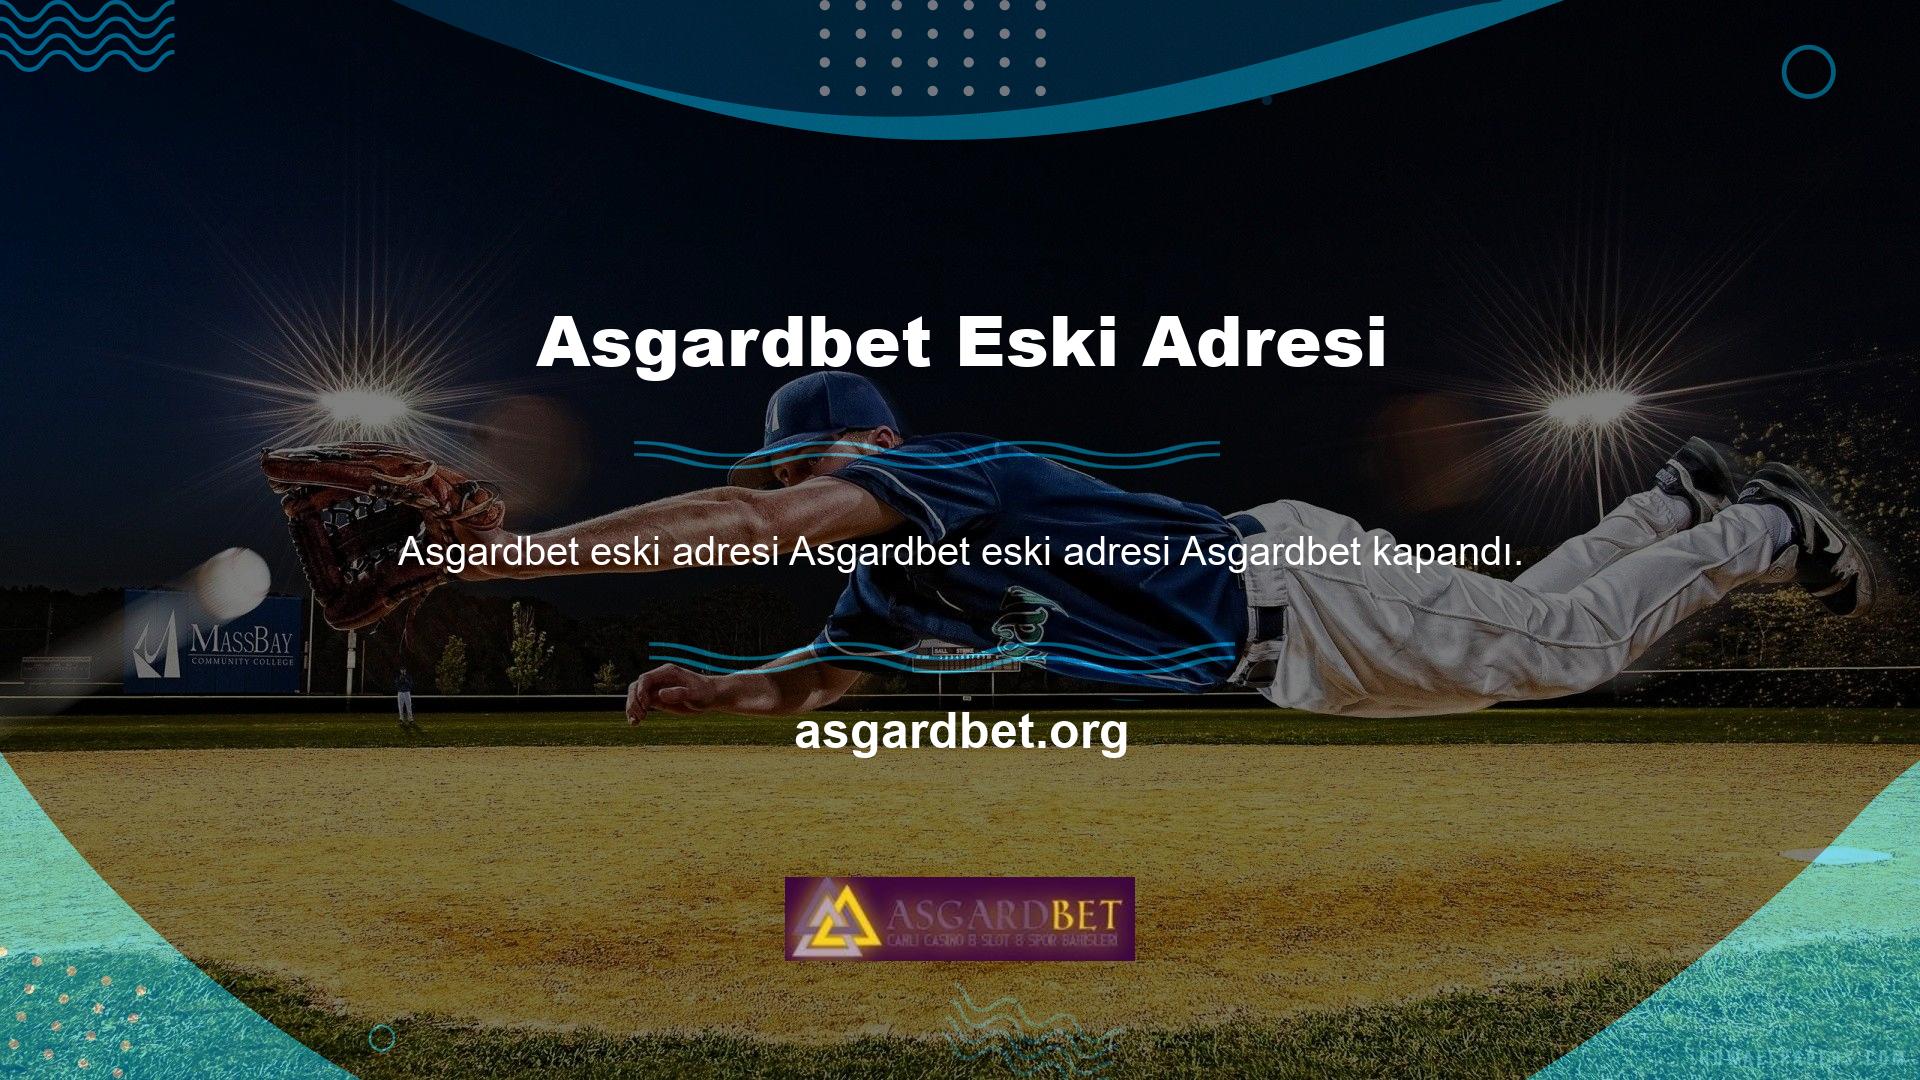 Yeni adresi Asgardbet